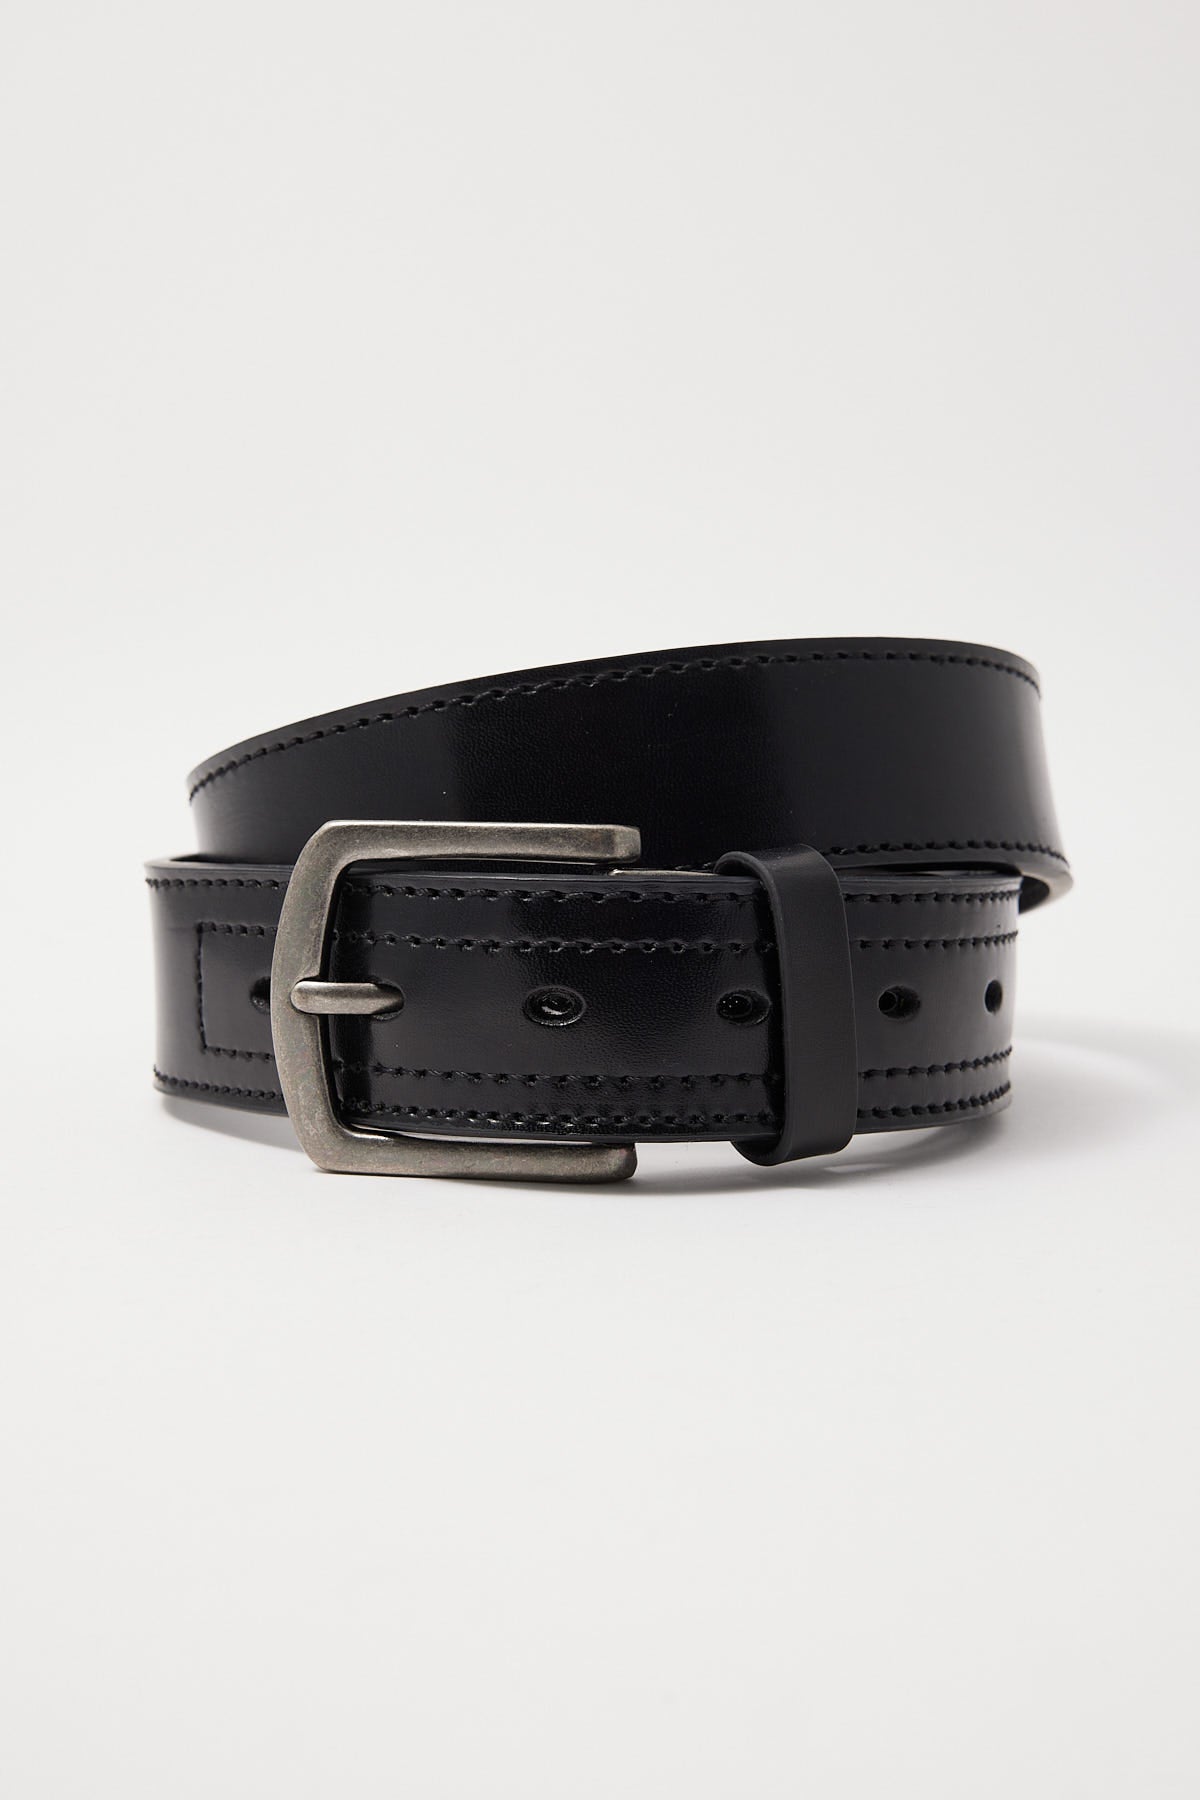 Dickies Industrial Strength Belt Black – Universal Store